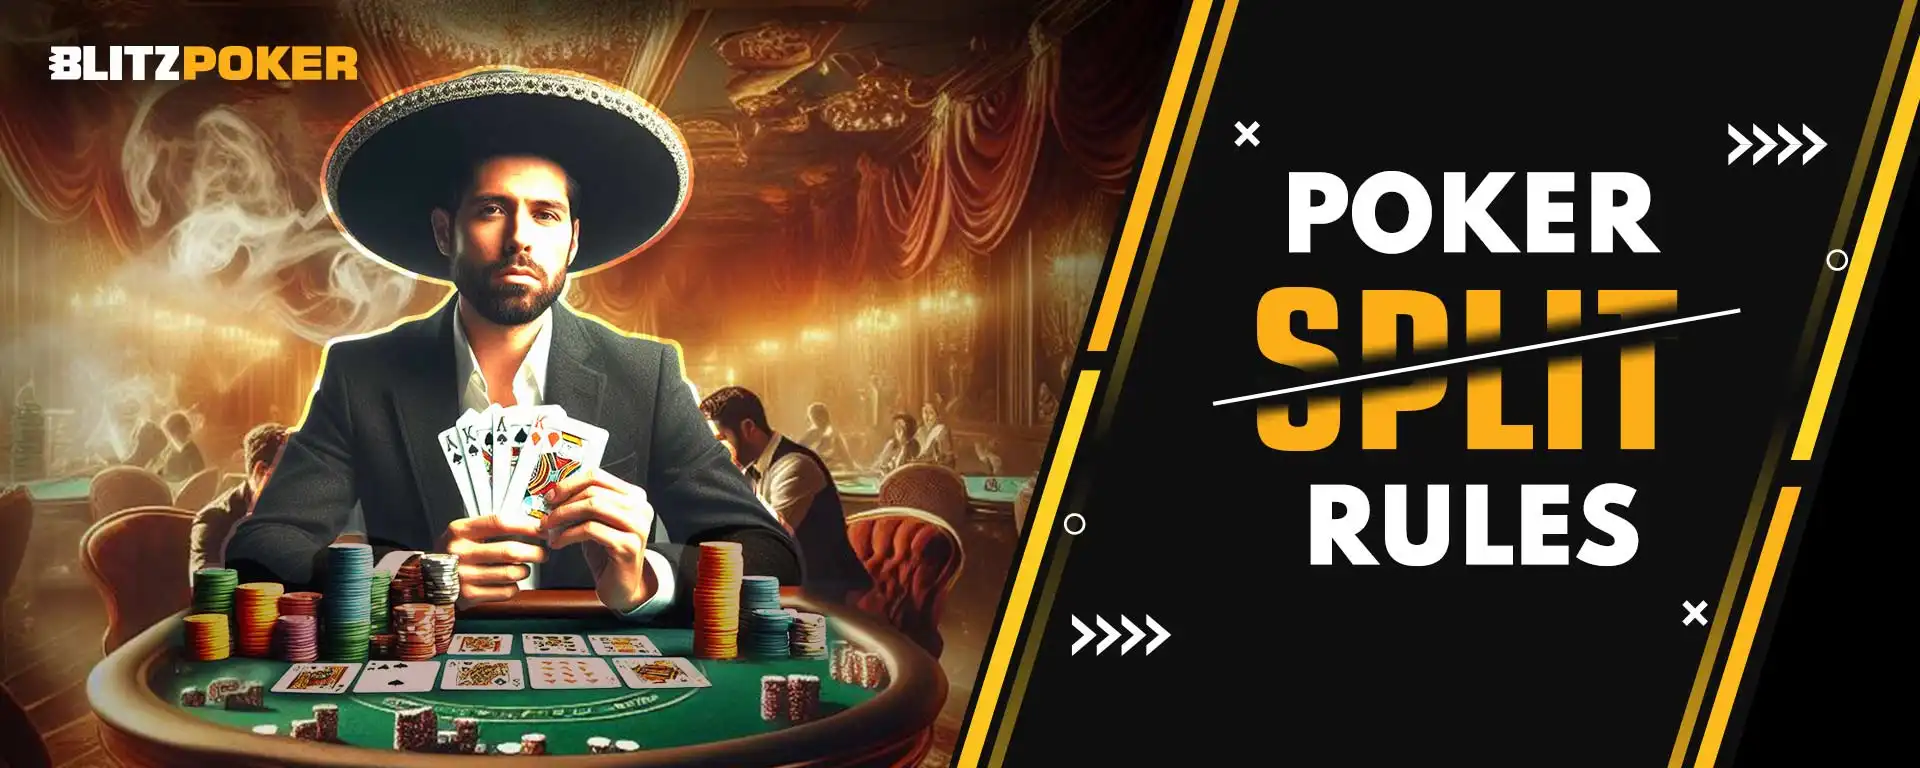 Poker Split Rules